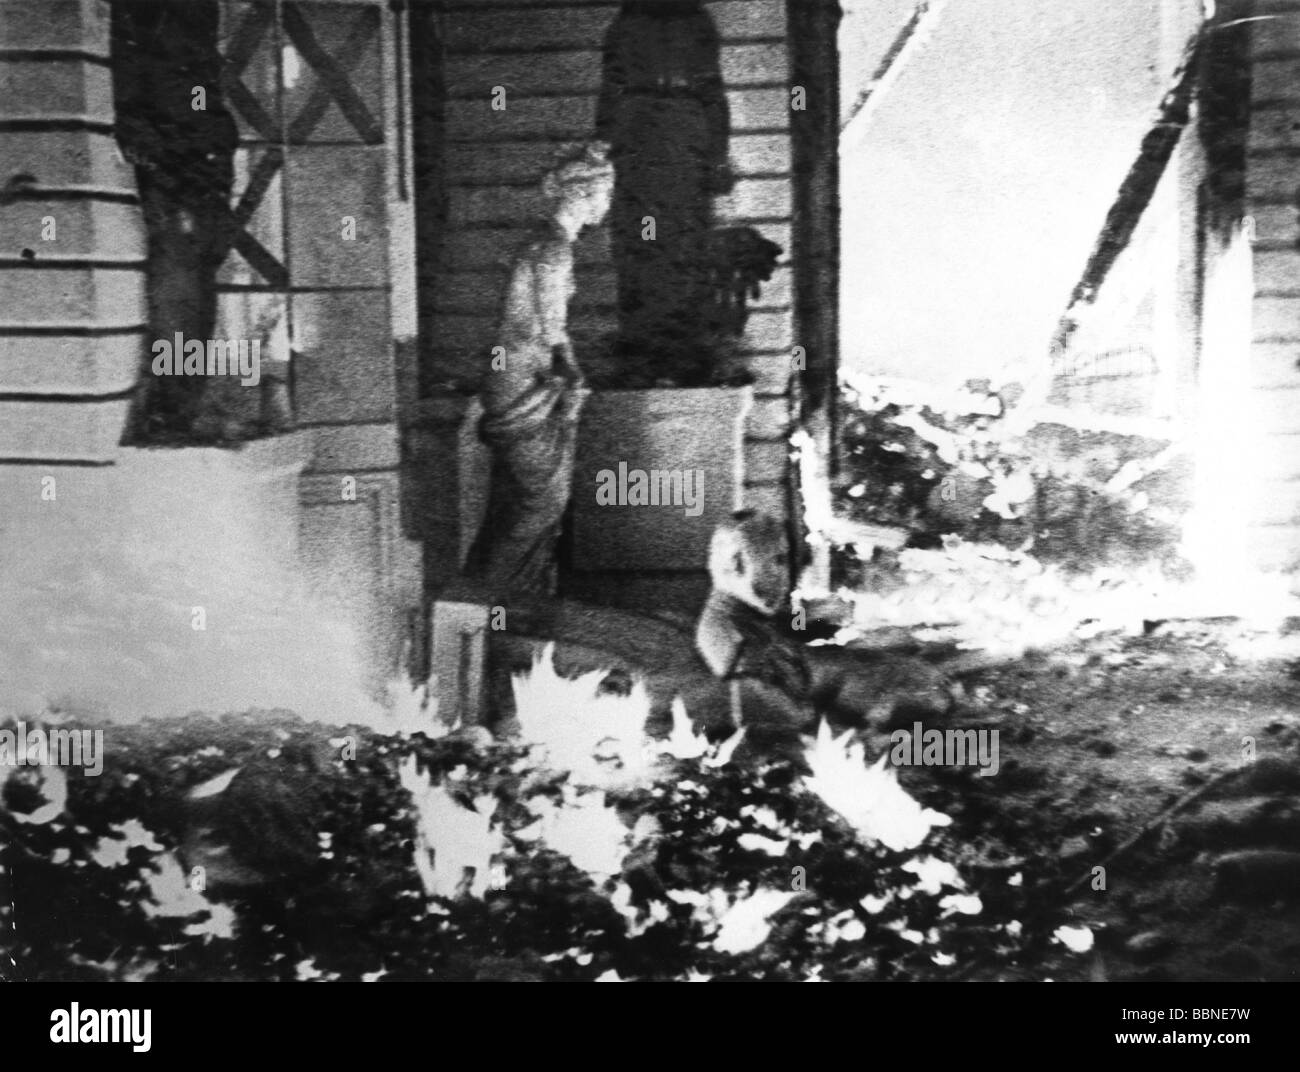 Ereignisse, Zweiter Weltkrieg/zweiter Weltkrieg, Russland, Leningrad, Belagerung, September 1941 - Januar 1944, brennendes Einsiedlermuseum nach einem deutschen Bombenanschlag, 1942, Stockfoto